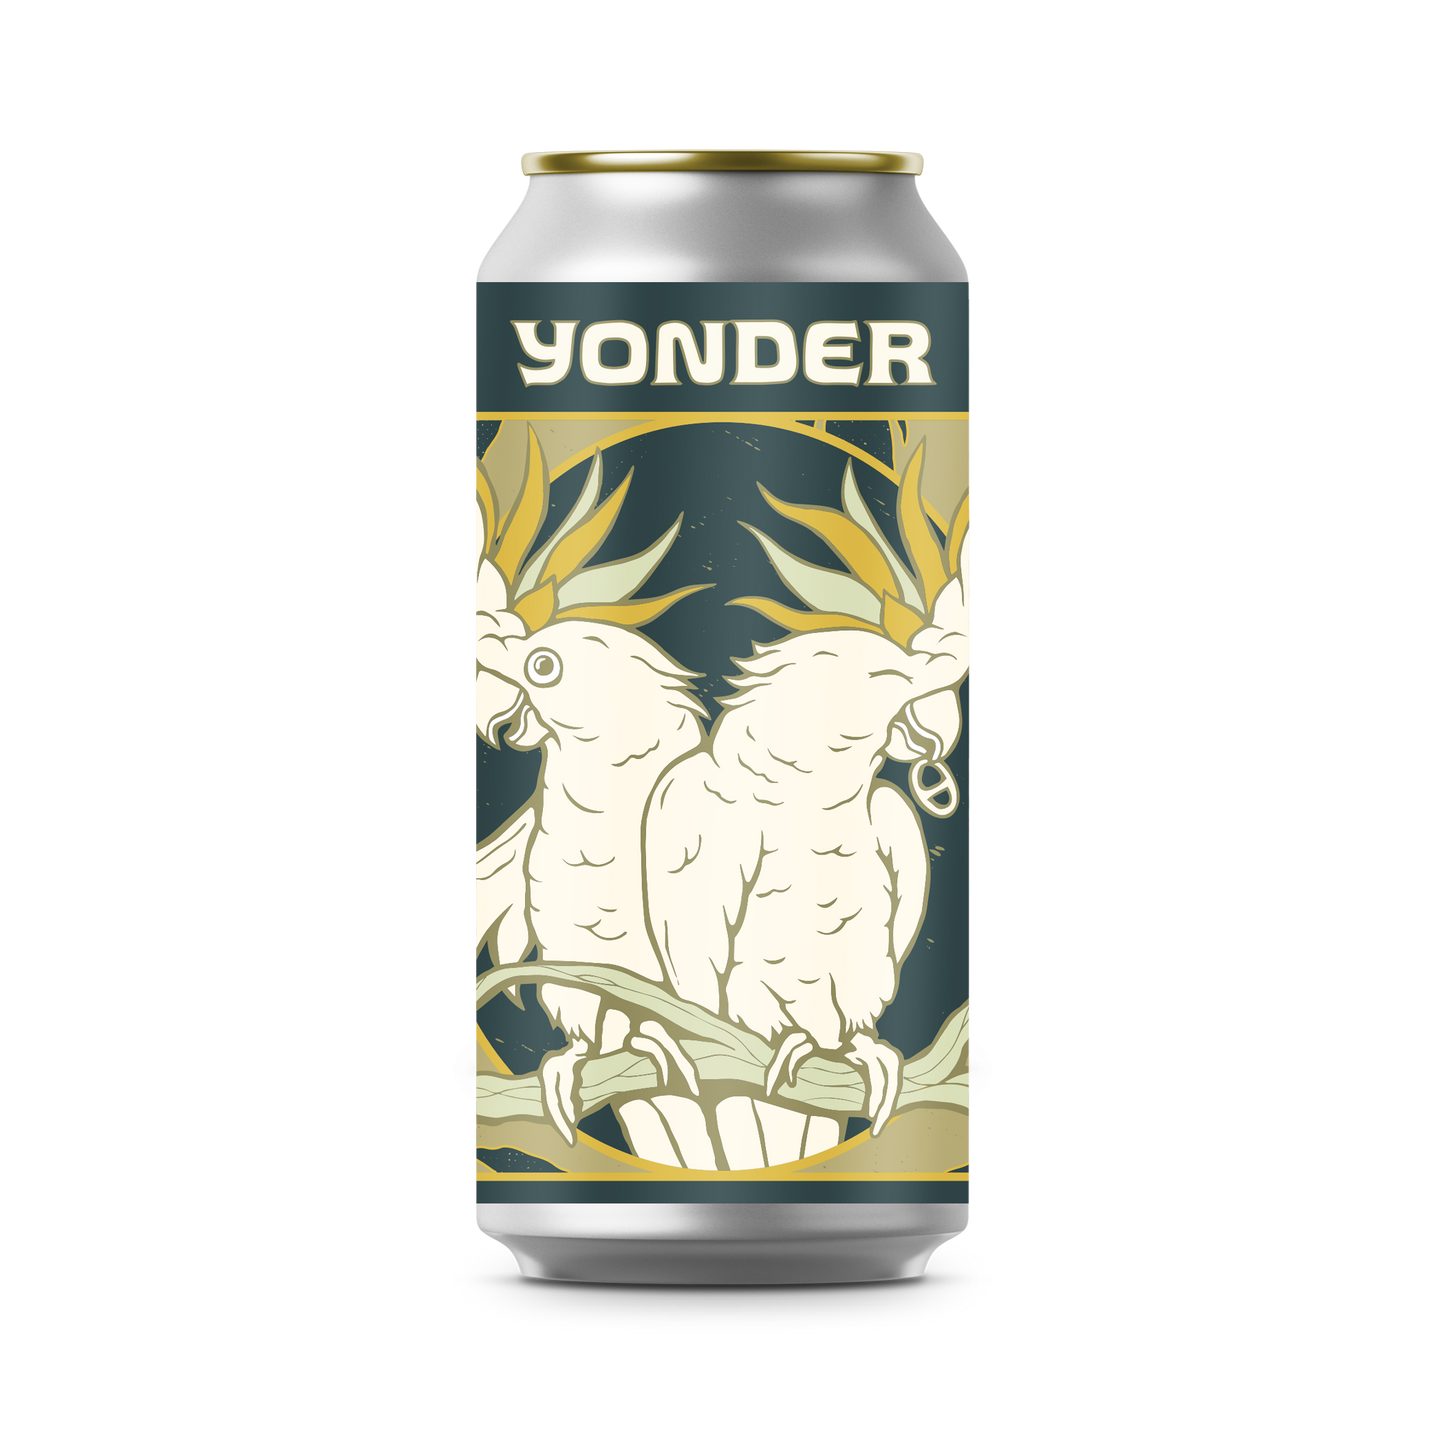 Yonder • Oatmeal Stout